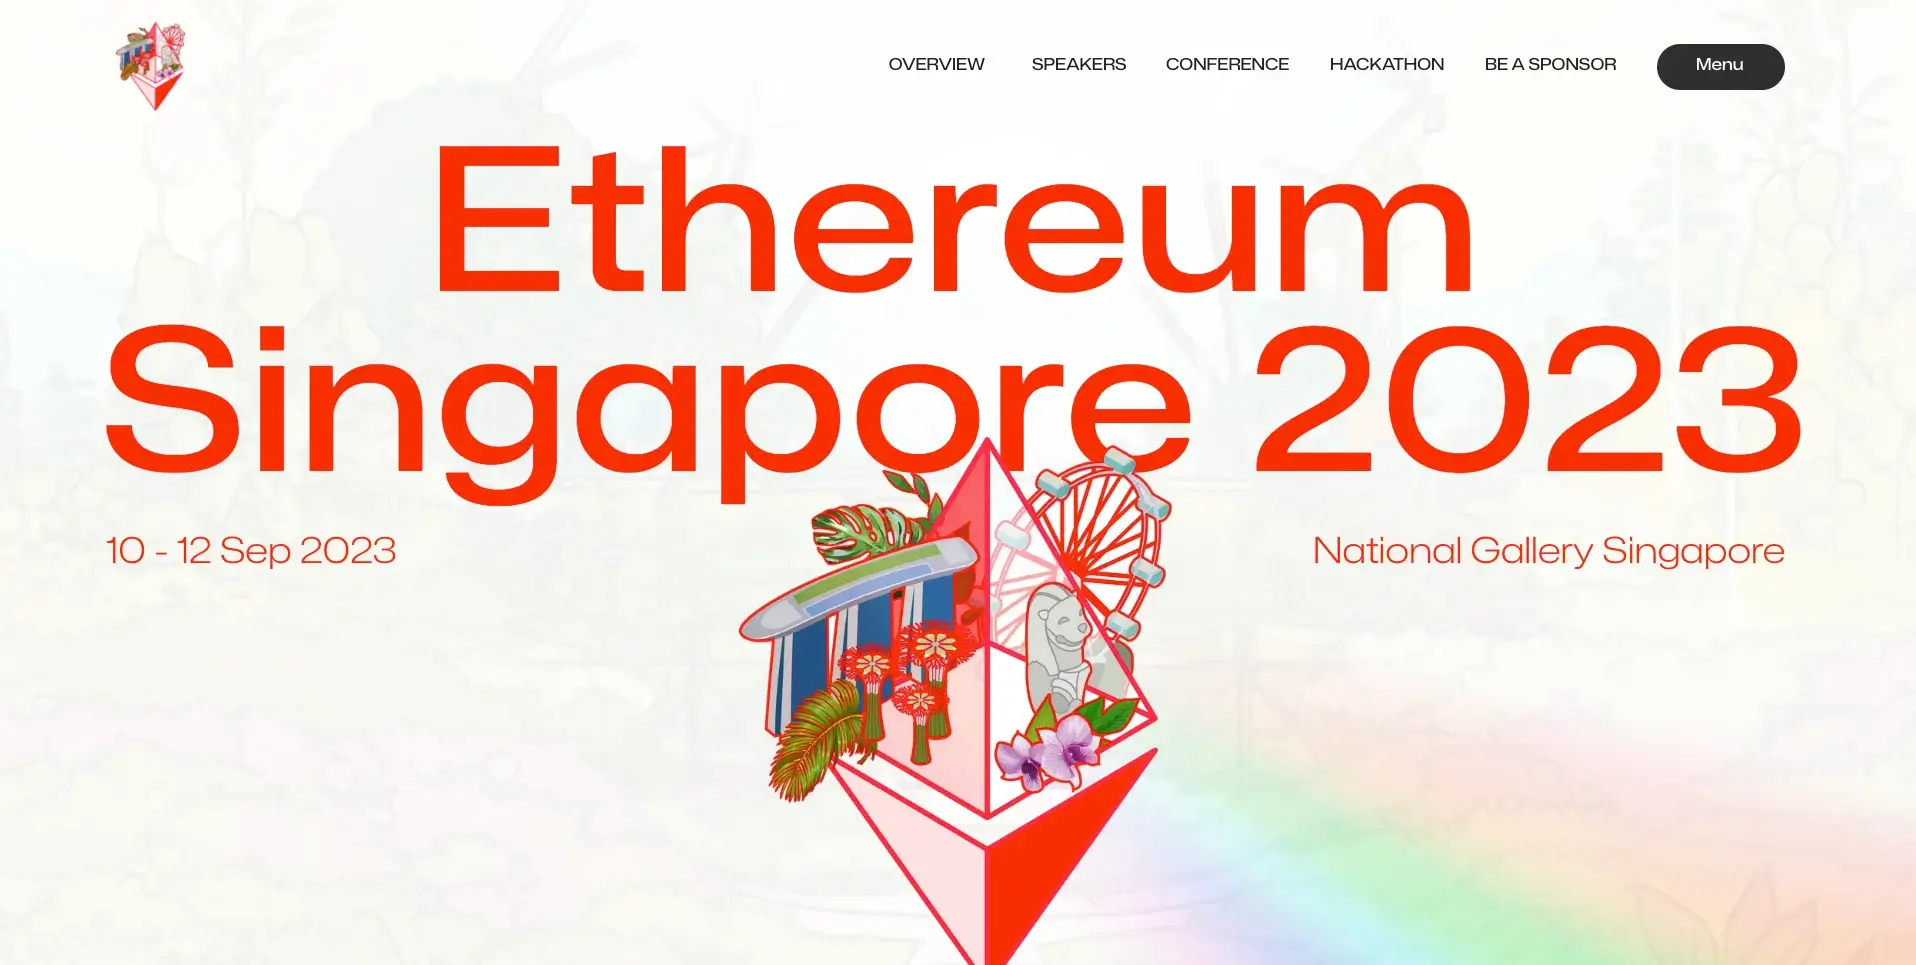 8. Ethereum Singapore